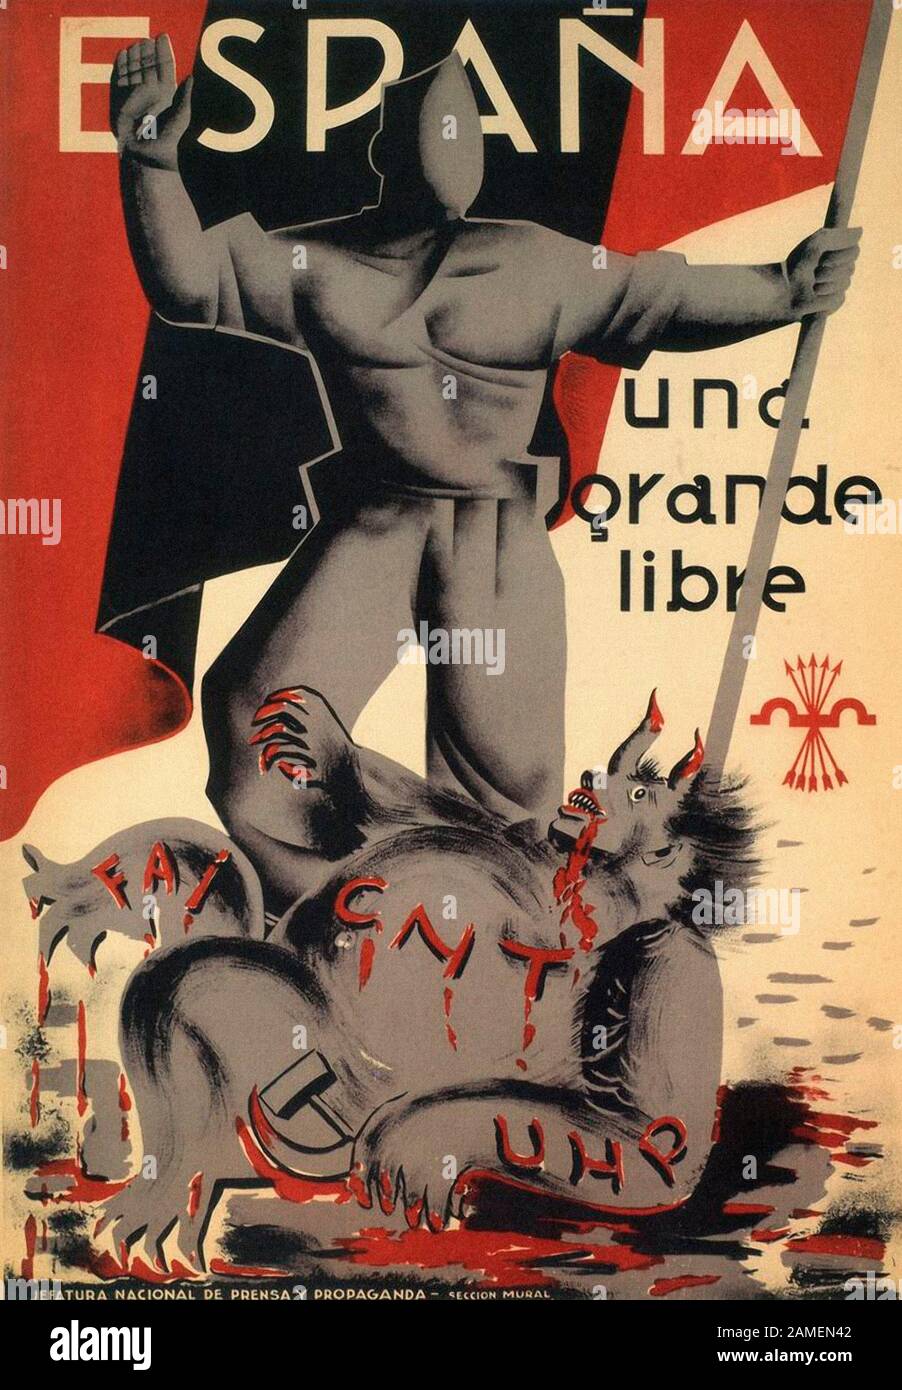 Plakat der Falange Española (Spanisch Phalanx) eine Spanische politische Organisation der faschistischen Inspiration. Stockfoto